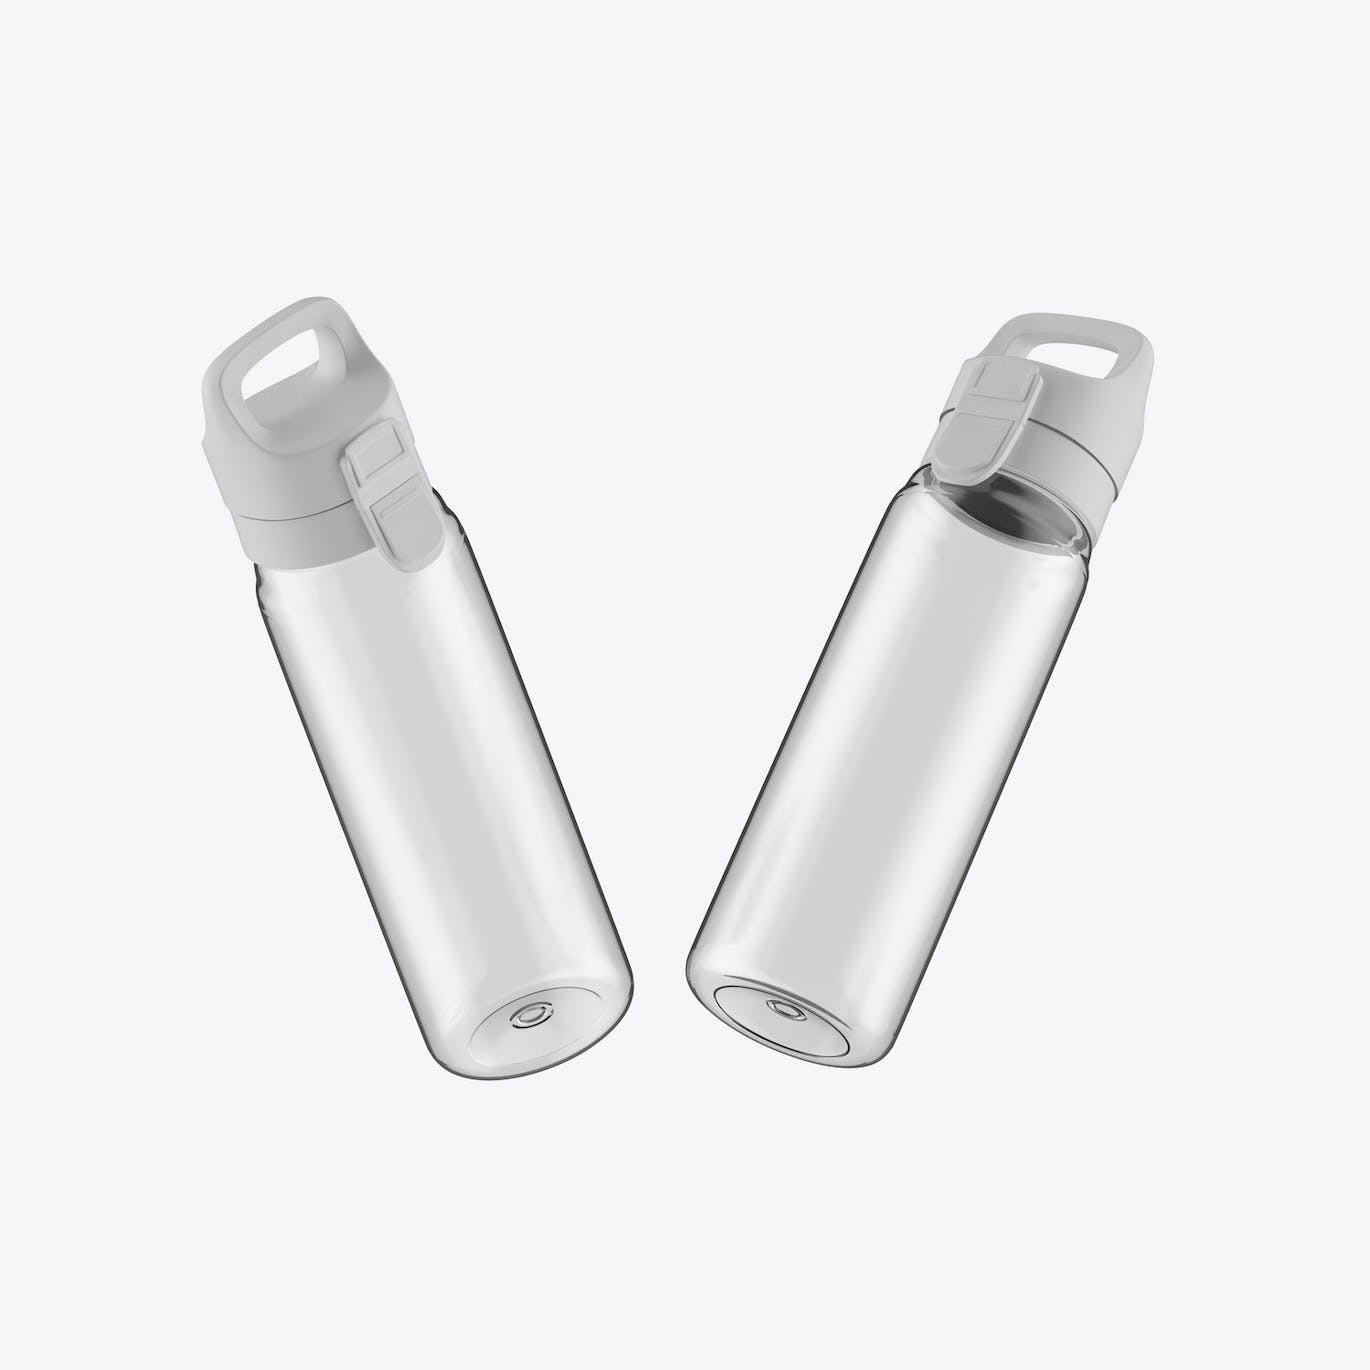 透明塑料运动水瓶设计样机 Sport Bottle Mockup 样机素材 第2张